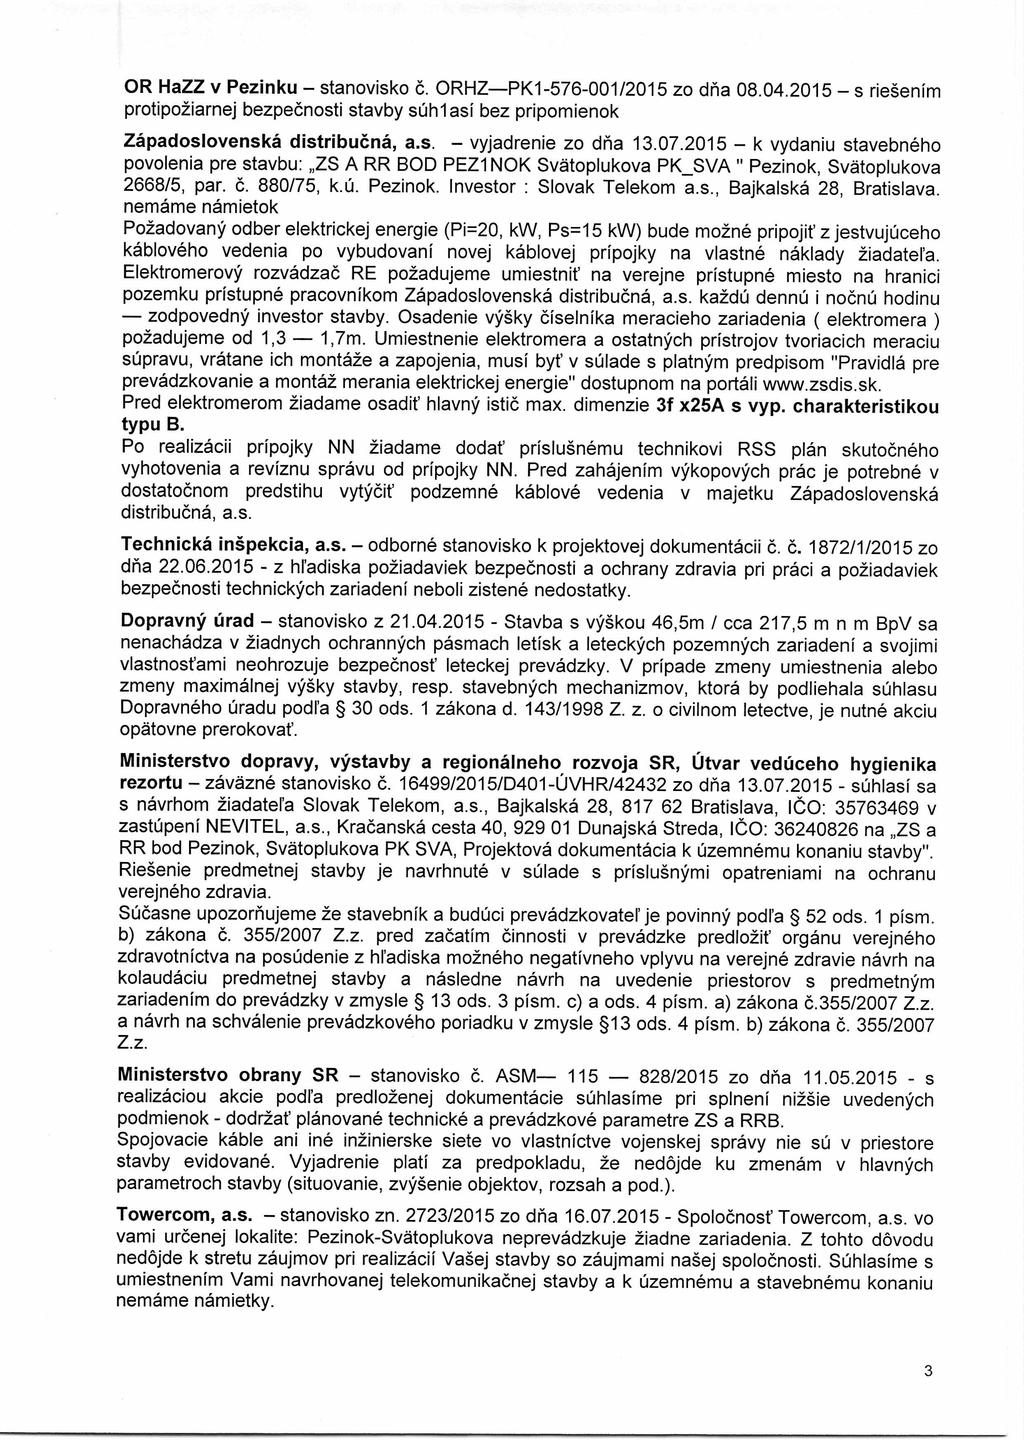 OR HaZZ v Pezinku stanovisko č. ORHZ PK1-576-001/2015 zo dňa 08.04.2015 s riešením protipožiarnej bezpečnosti stavby súhlasí bez pripomienok Západoslovenská distribučná, a.s. vyjadrenie zo dňa 13.07.